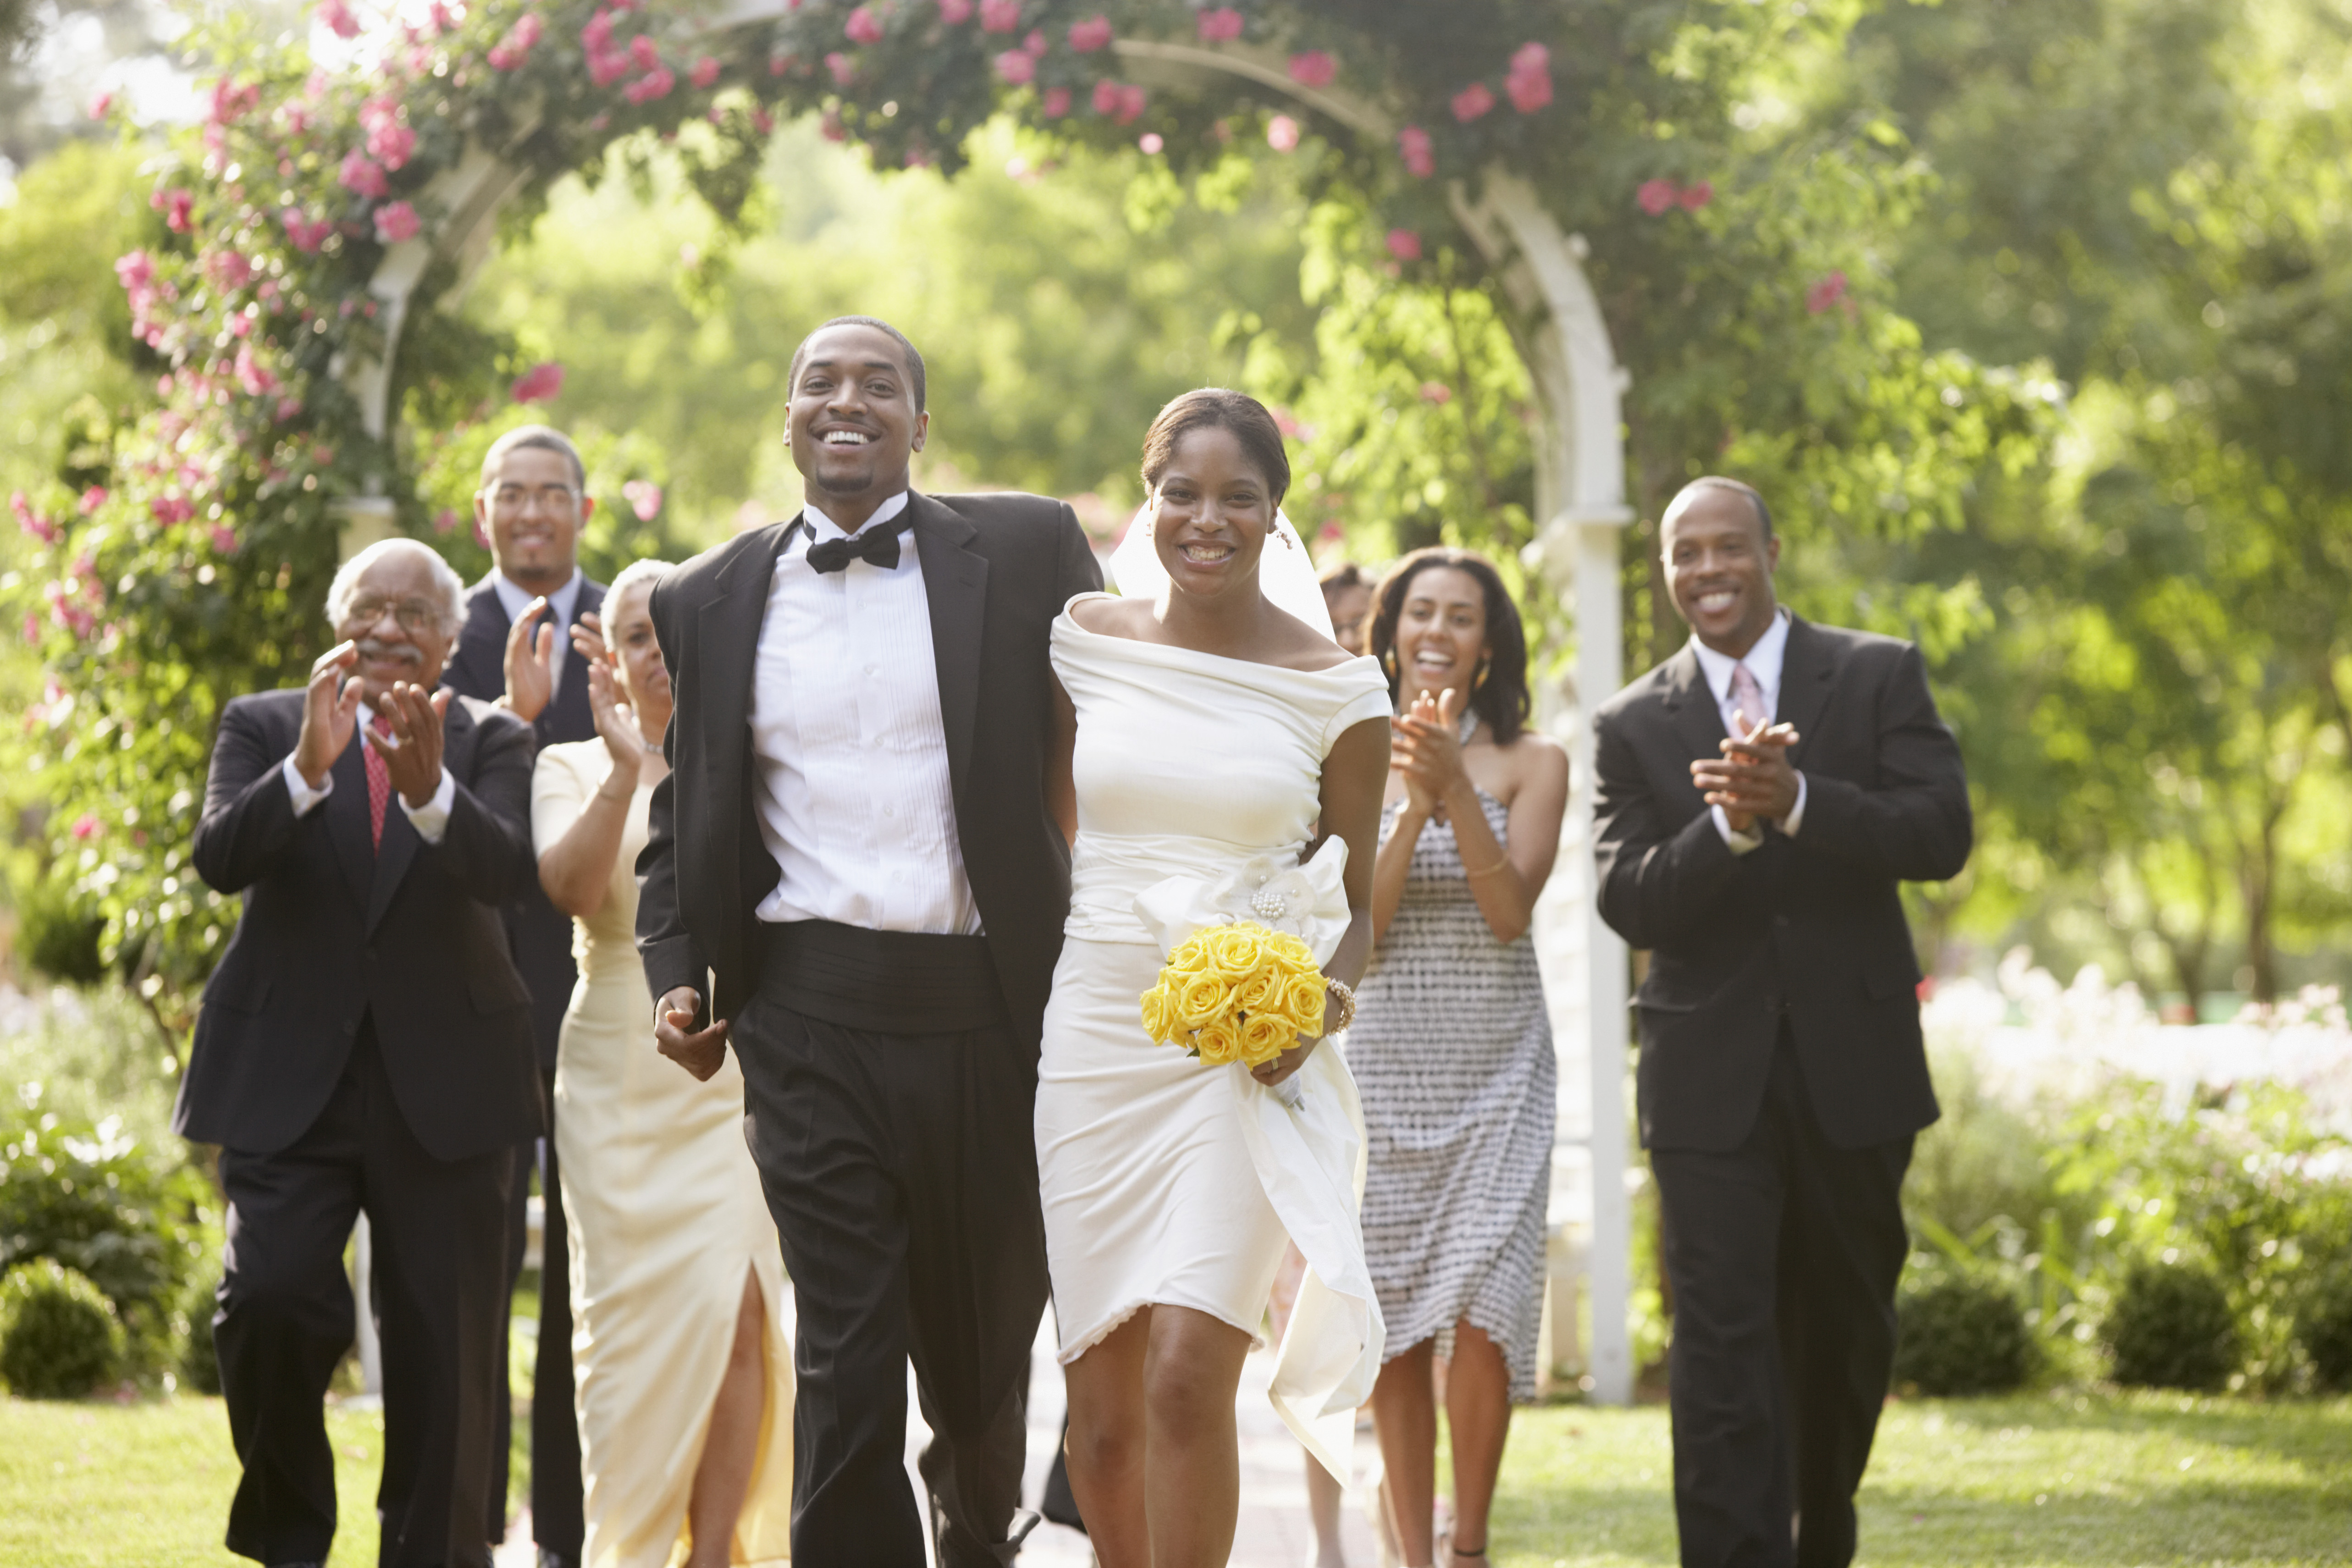 Les invités d'un mariage applaudissent les jeunes mariés | Source : Getty Images